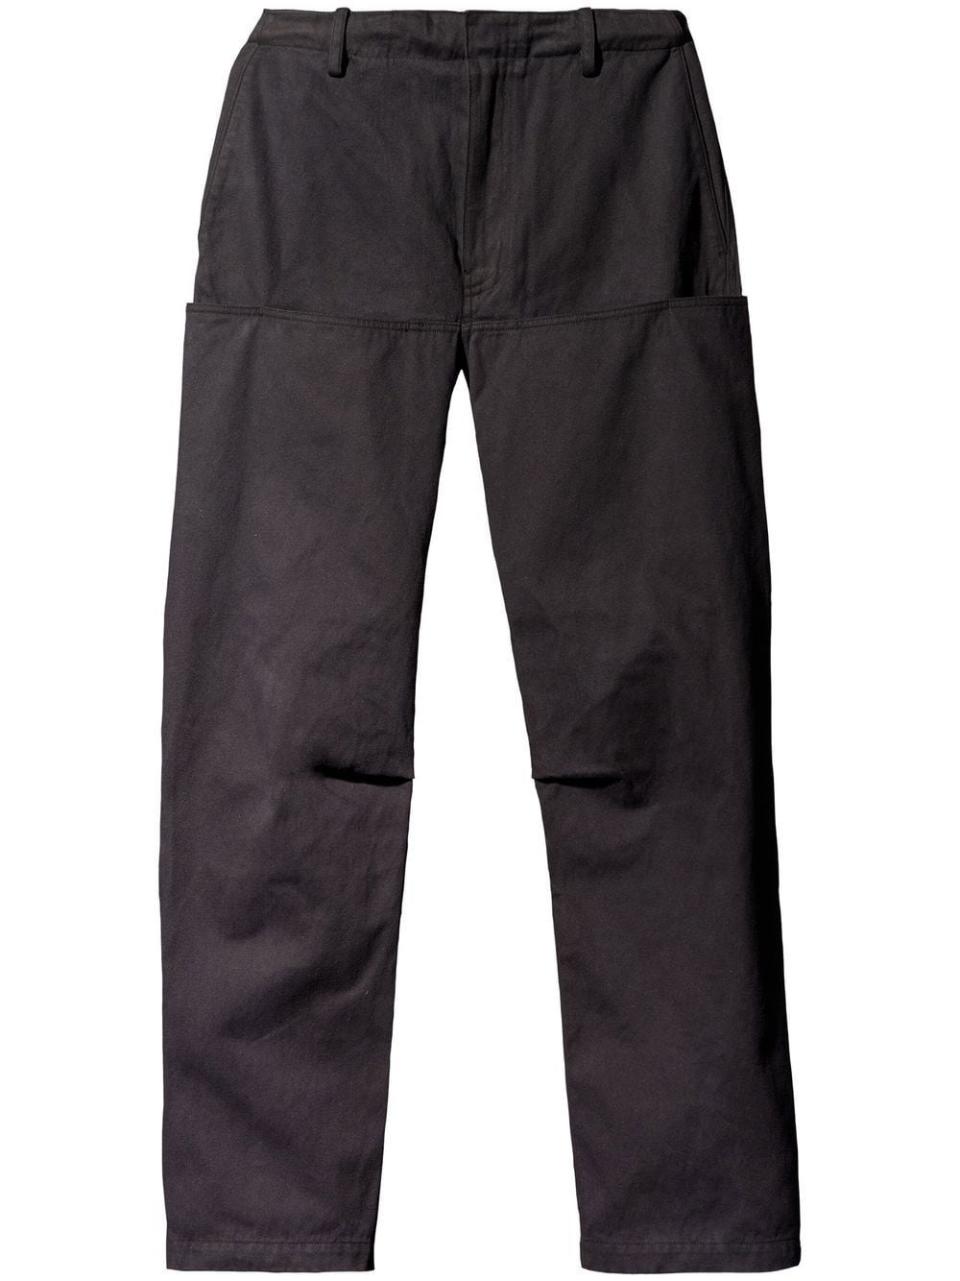 Yeezy Gap Engineered by Balenciaga Sateen Cargo Pants